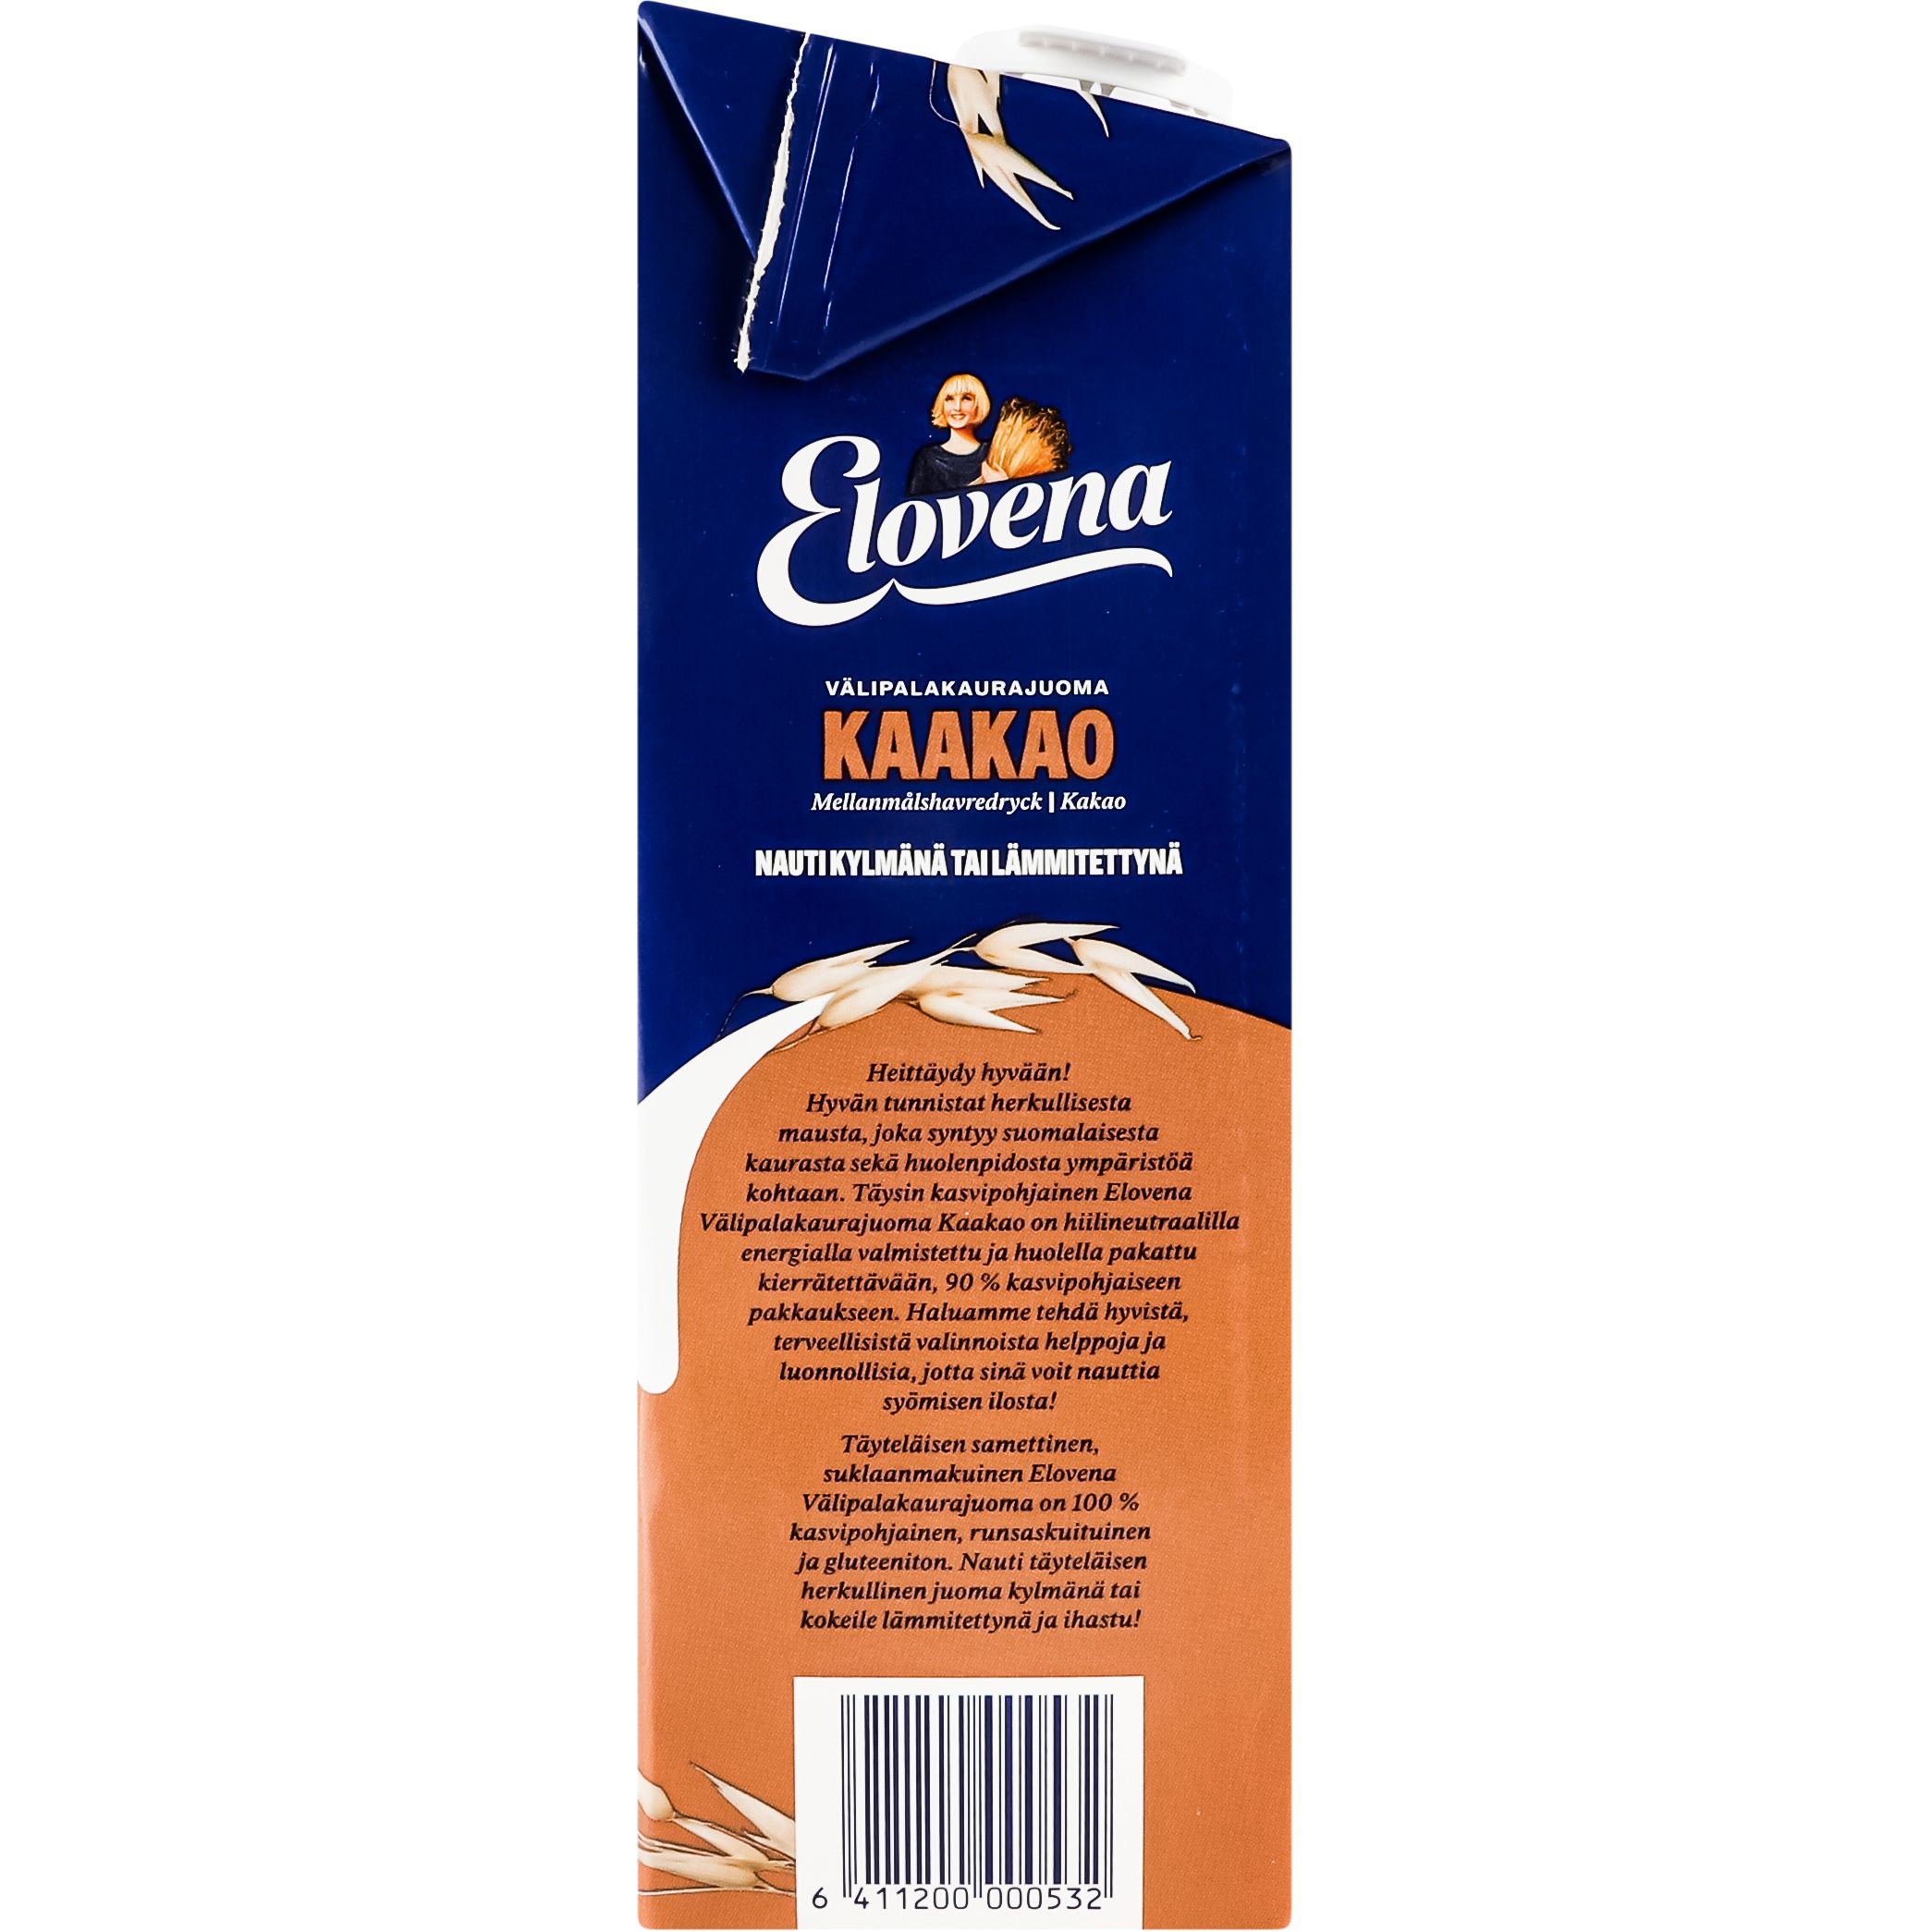 Овсяный напиток Elovena Kaakao с шоколадом 1л - фото 4